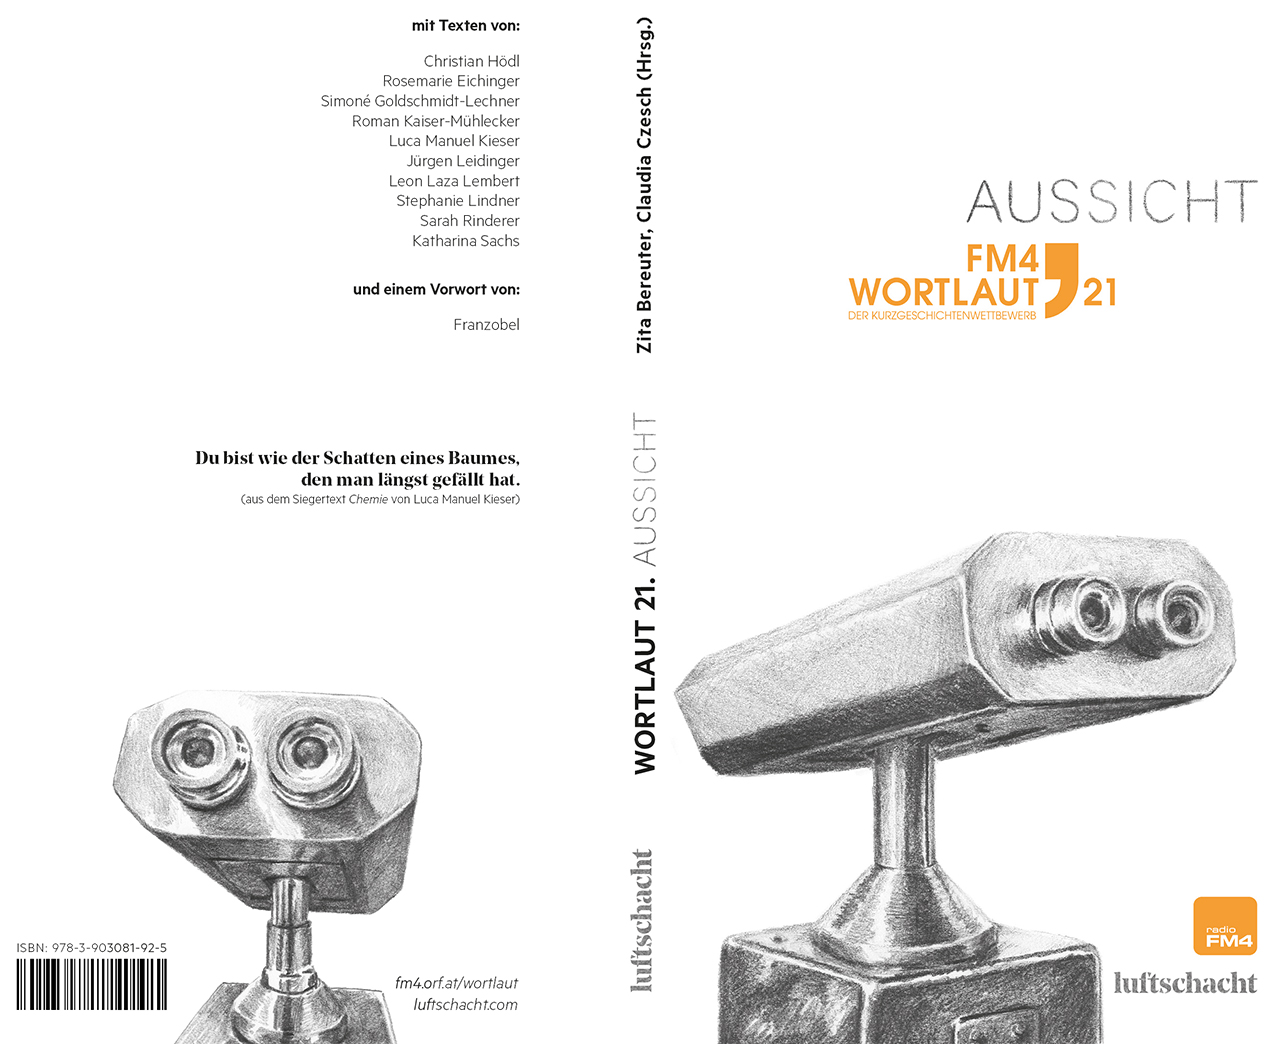 Buchcover mit Überwachungskamera